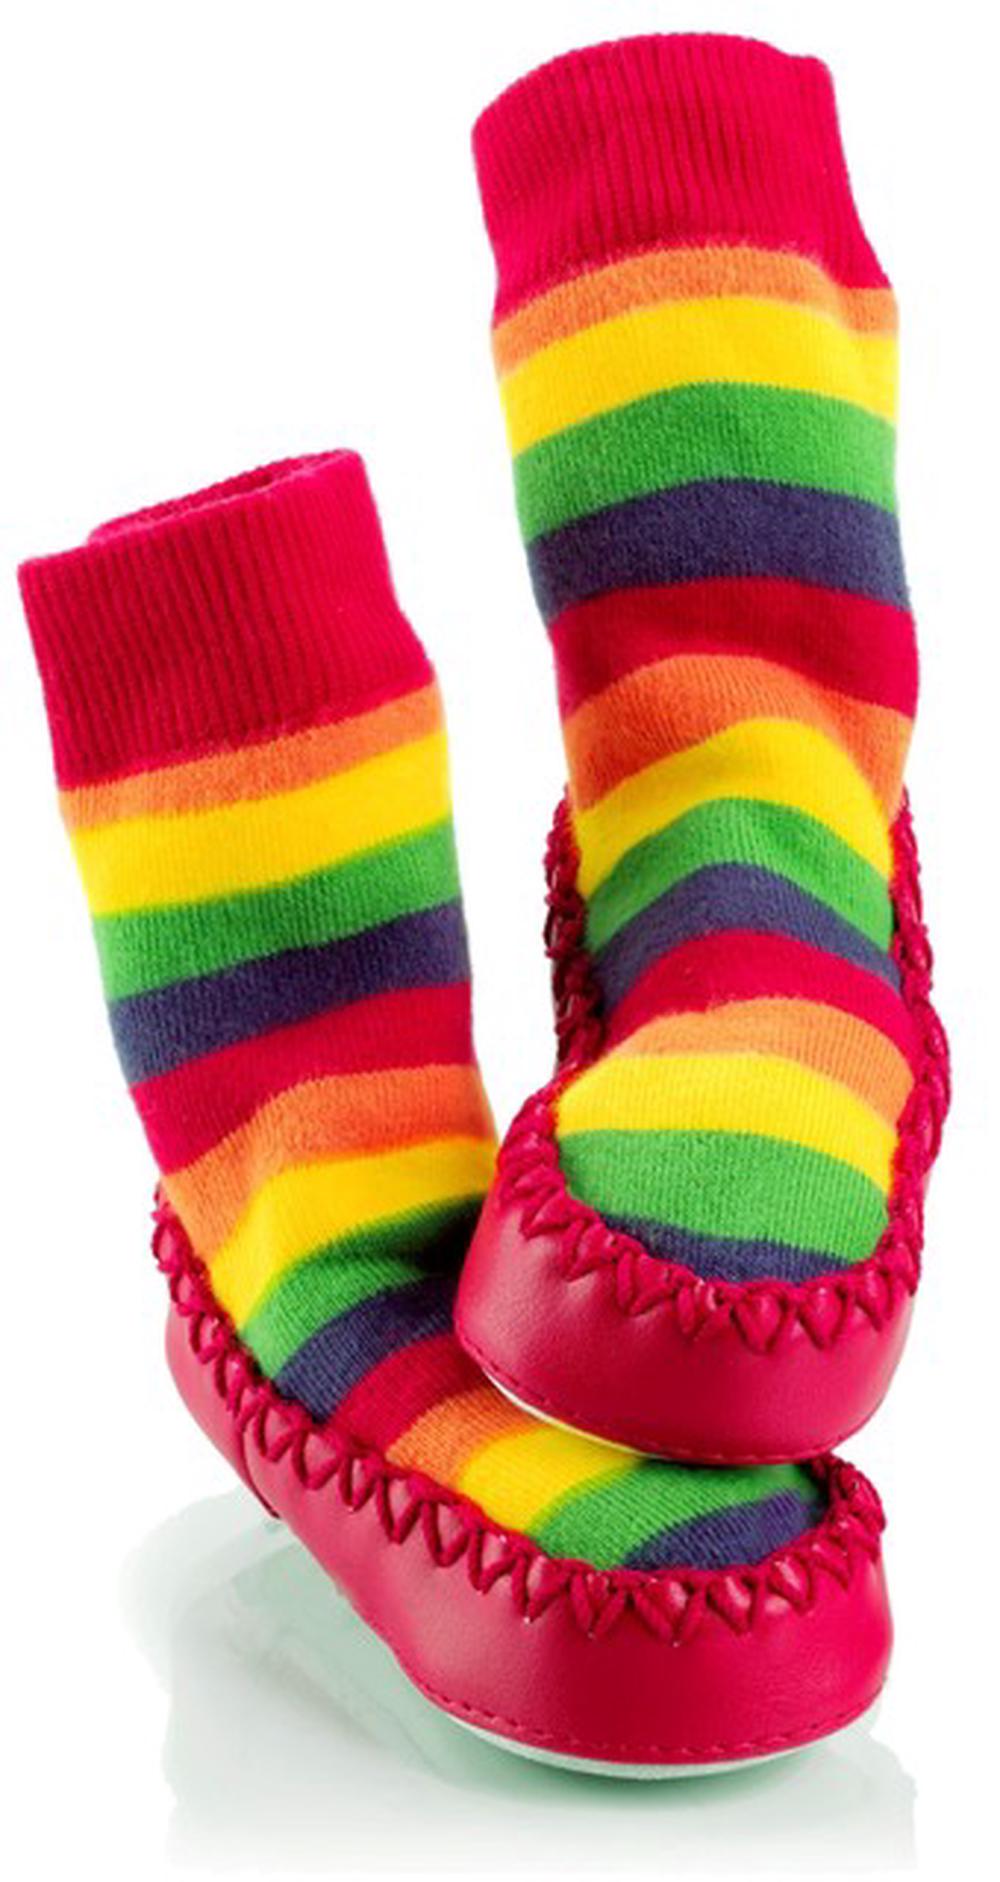 mocc ons slipper socks